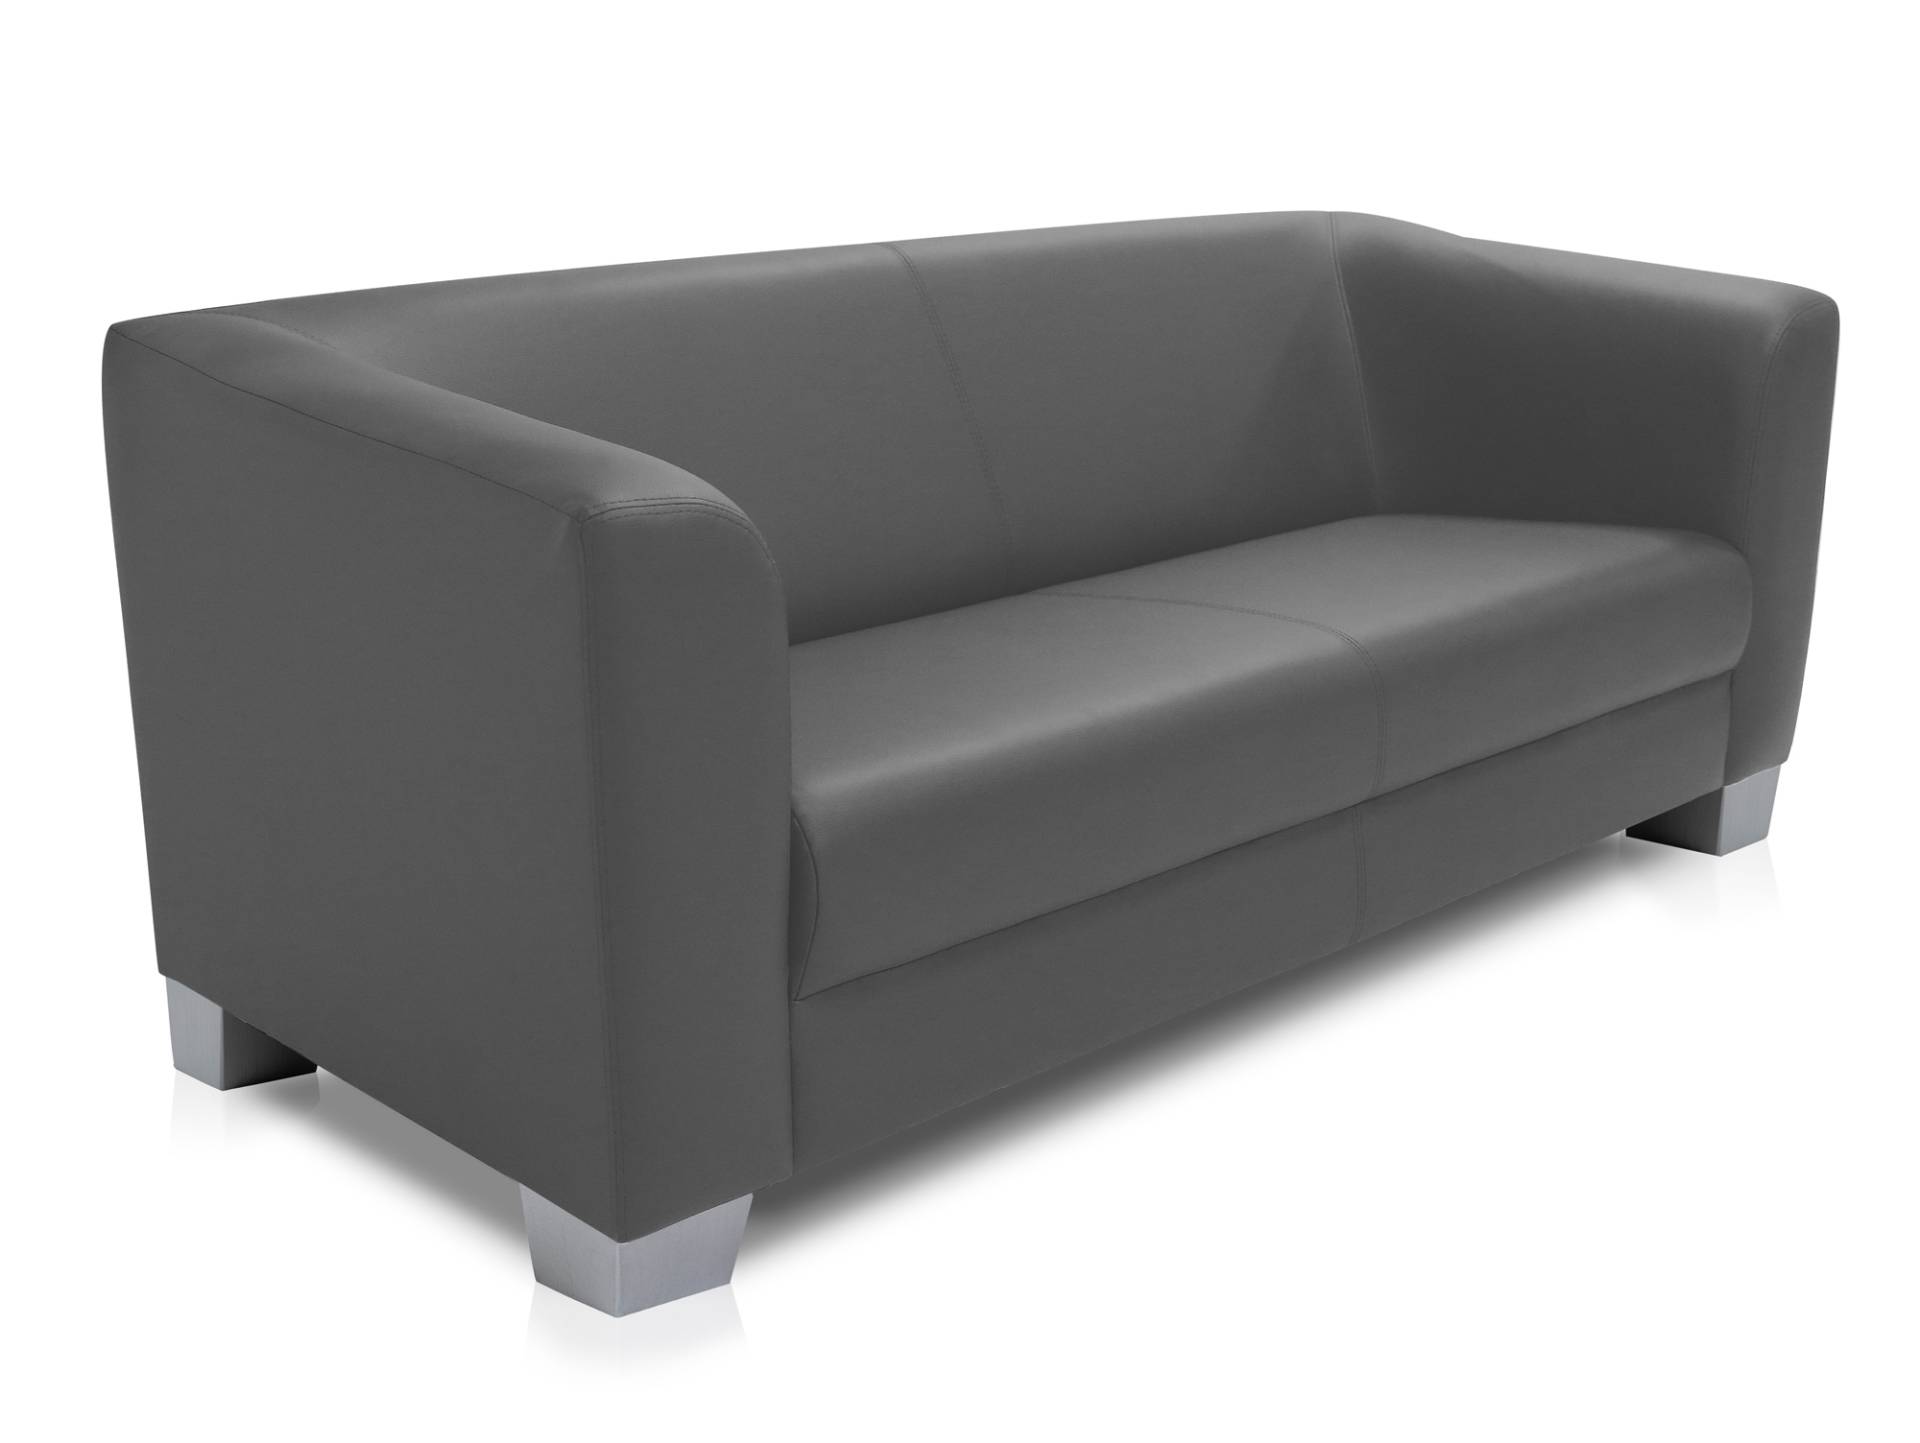 CHICAGO 3-Sitzer Sofa, Material Kunstleder von Möbel-Eins